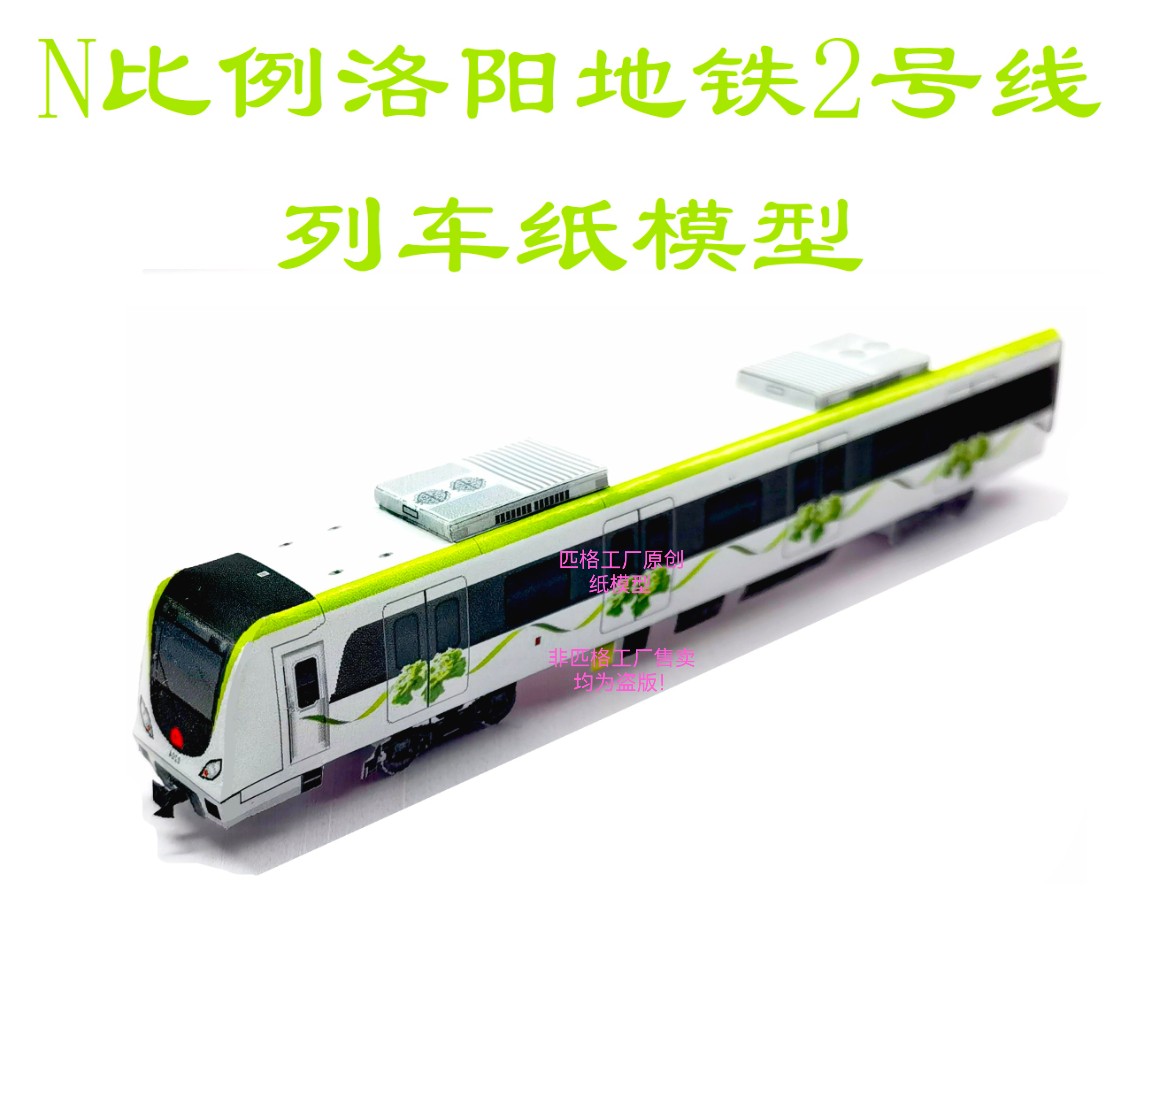 匹格n比例洛阳地铁2号线列车模型3D纸模DIY手工火车地铁轻轨模型